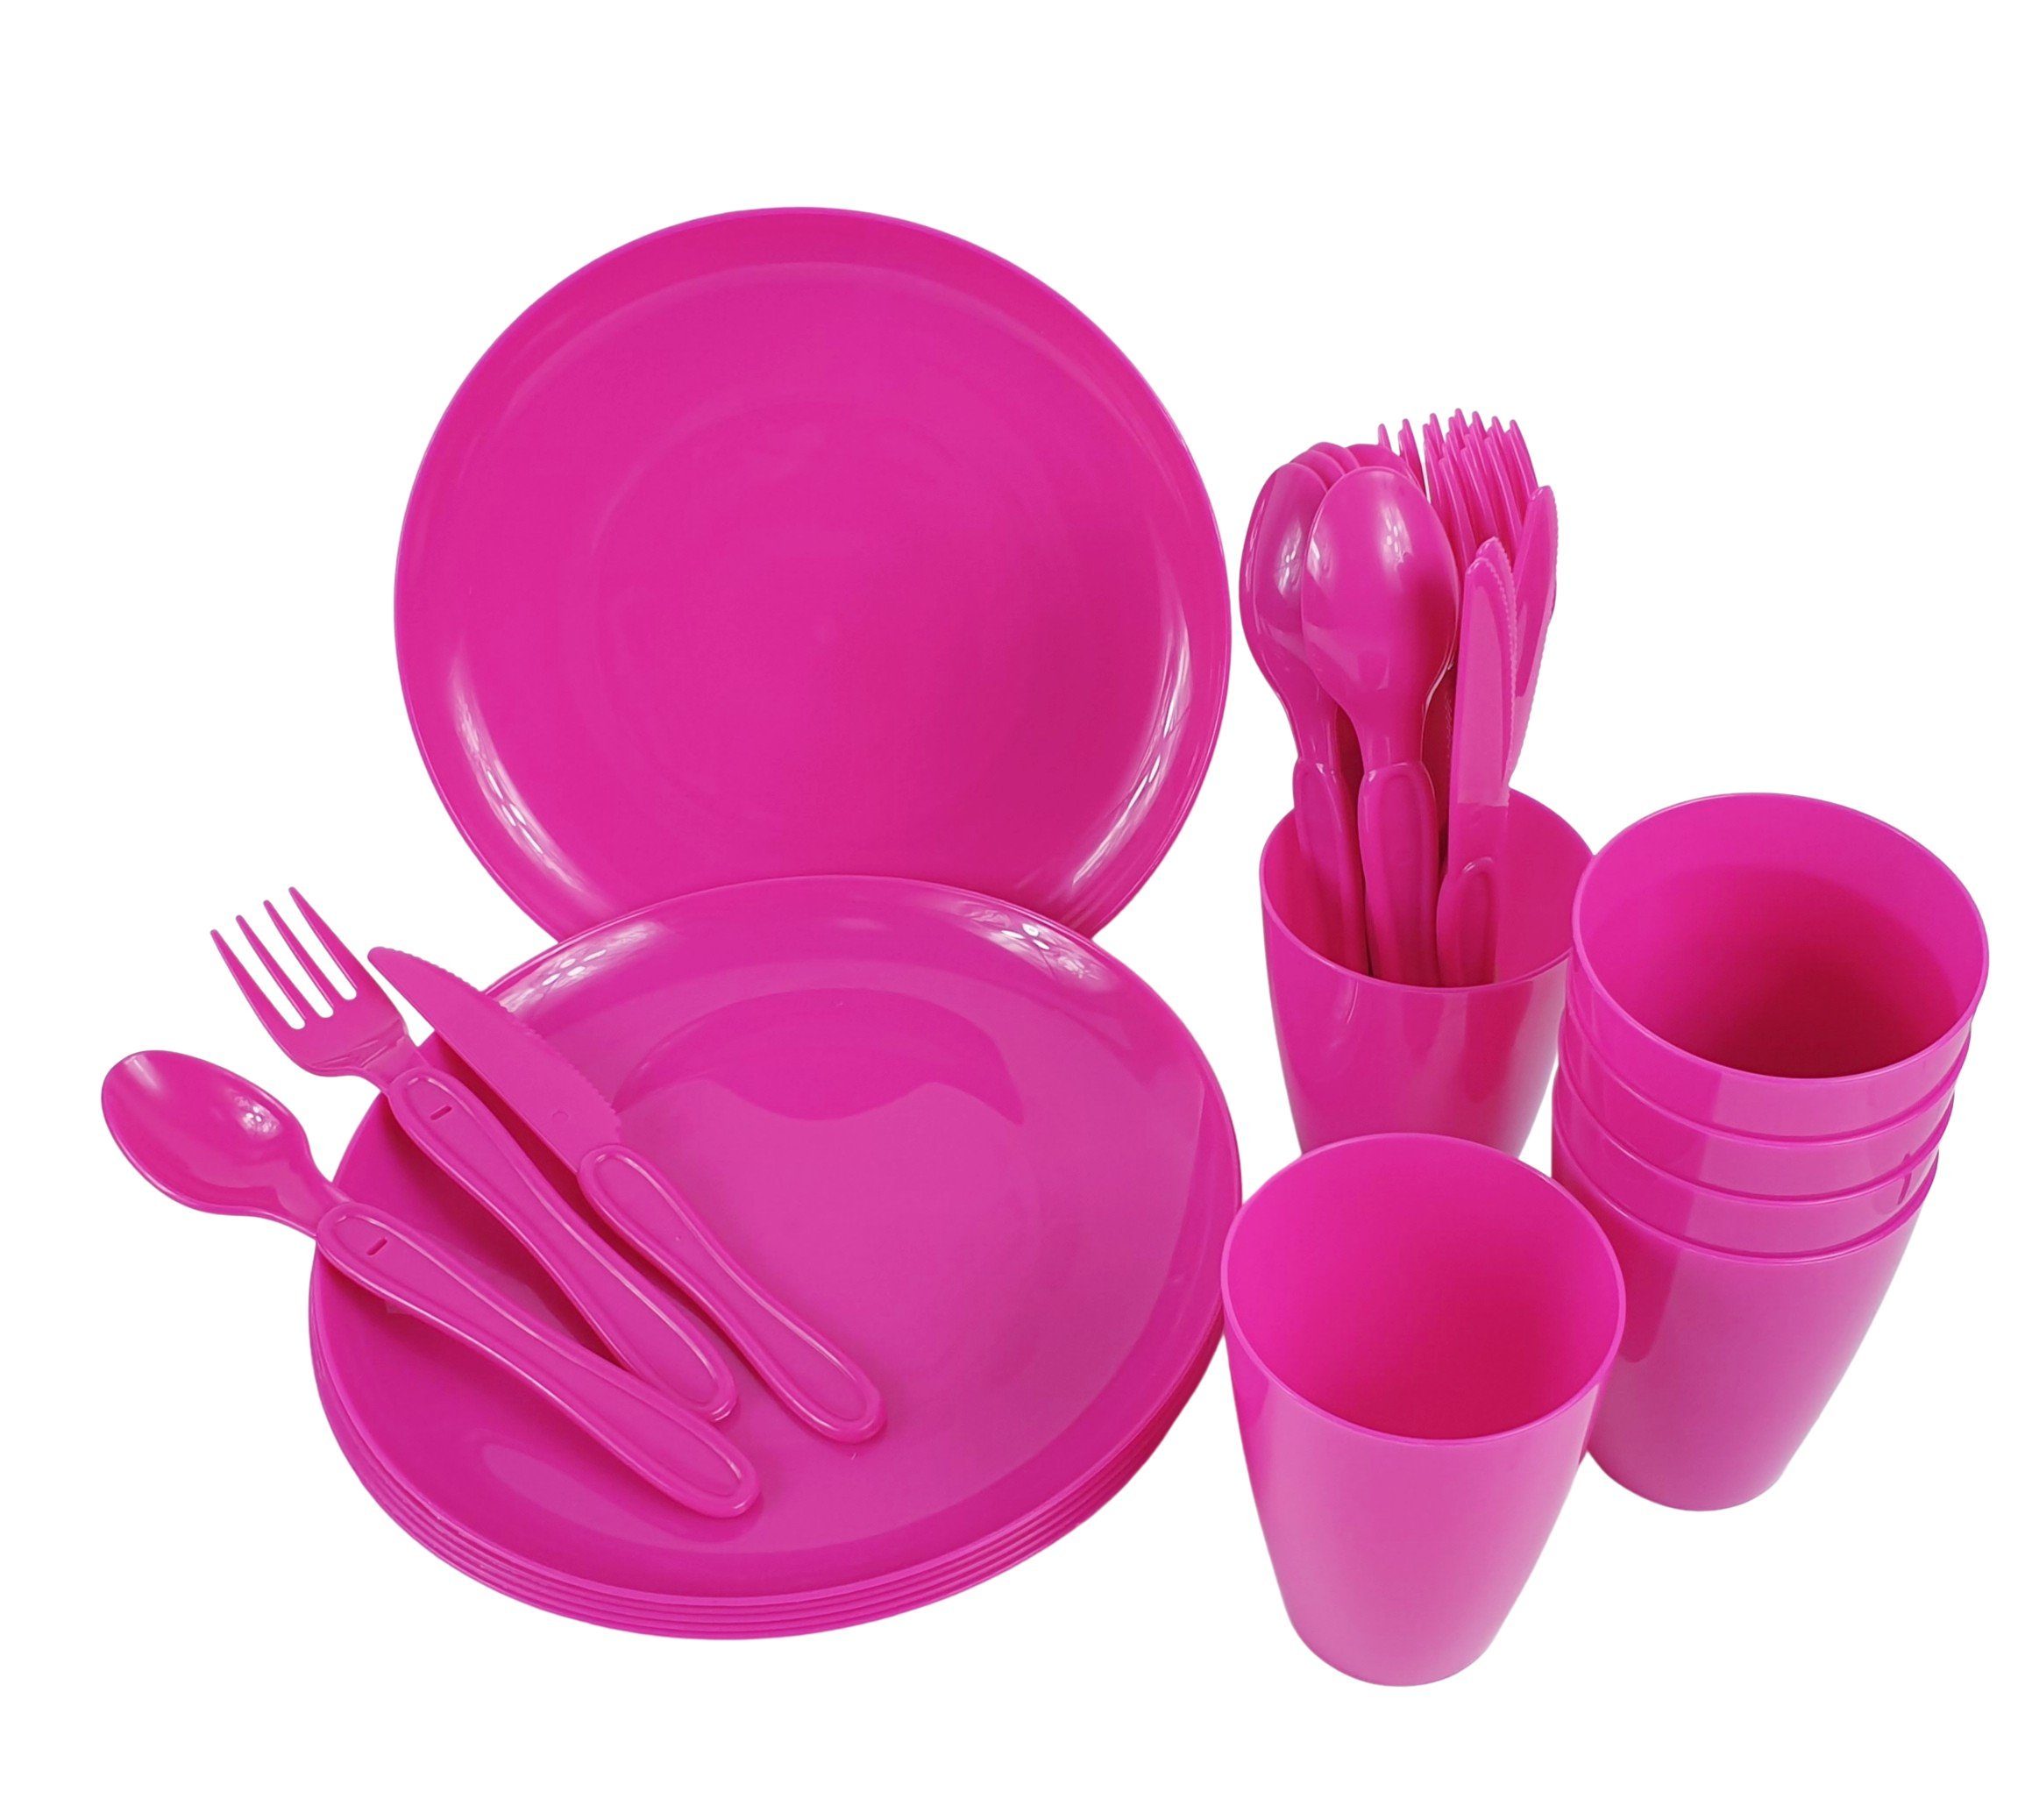 Geschirr-Set Set Box, Picknick Picknickgeschirr Geschirr teilig Personen pink sesua 31 mit 4